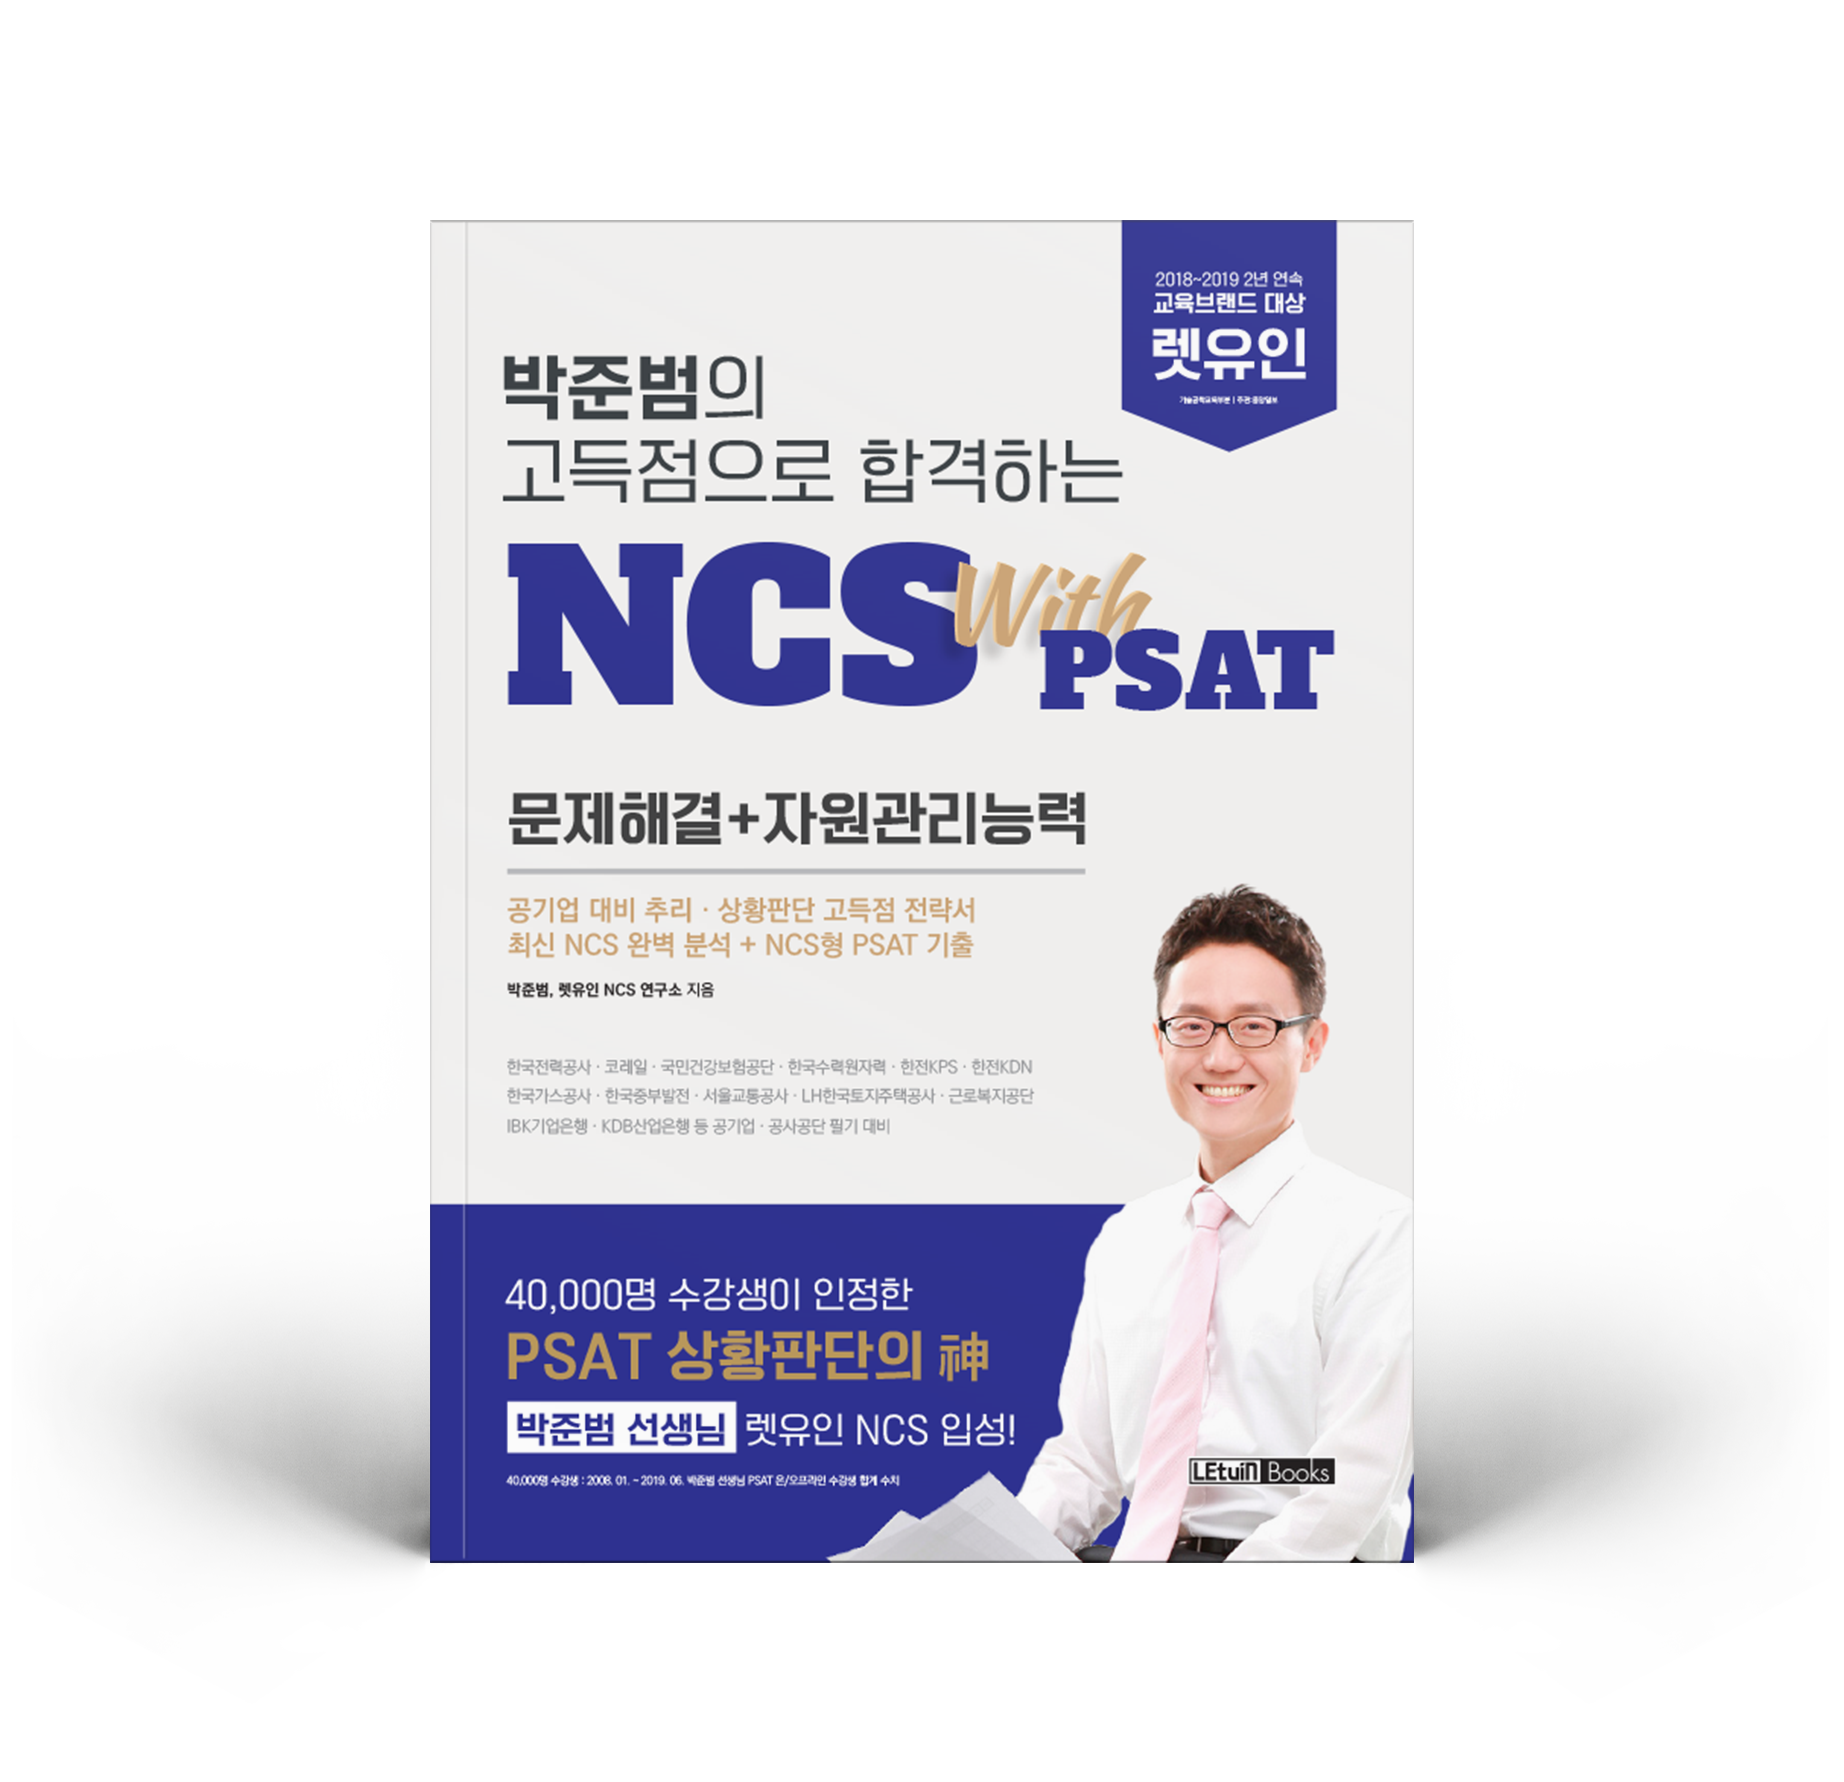 박준범의 고득점으로 합격하는 NCS with PSAT 문제해결 자원관리능력